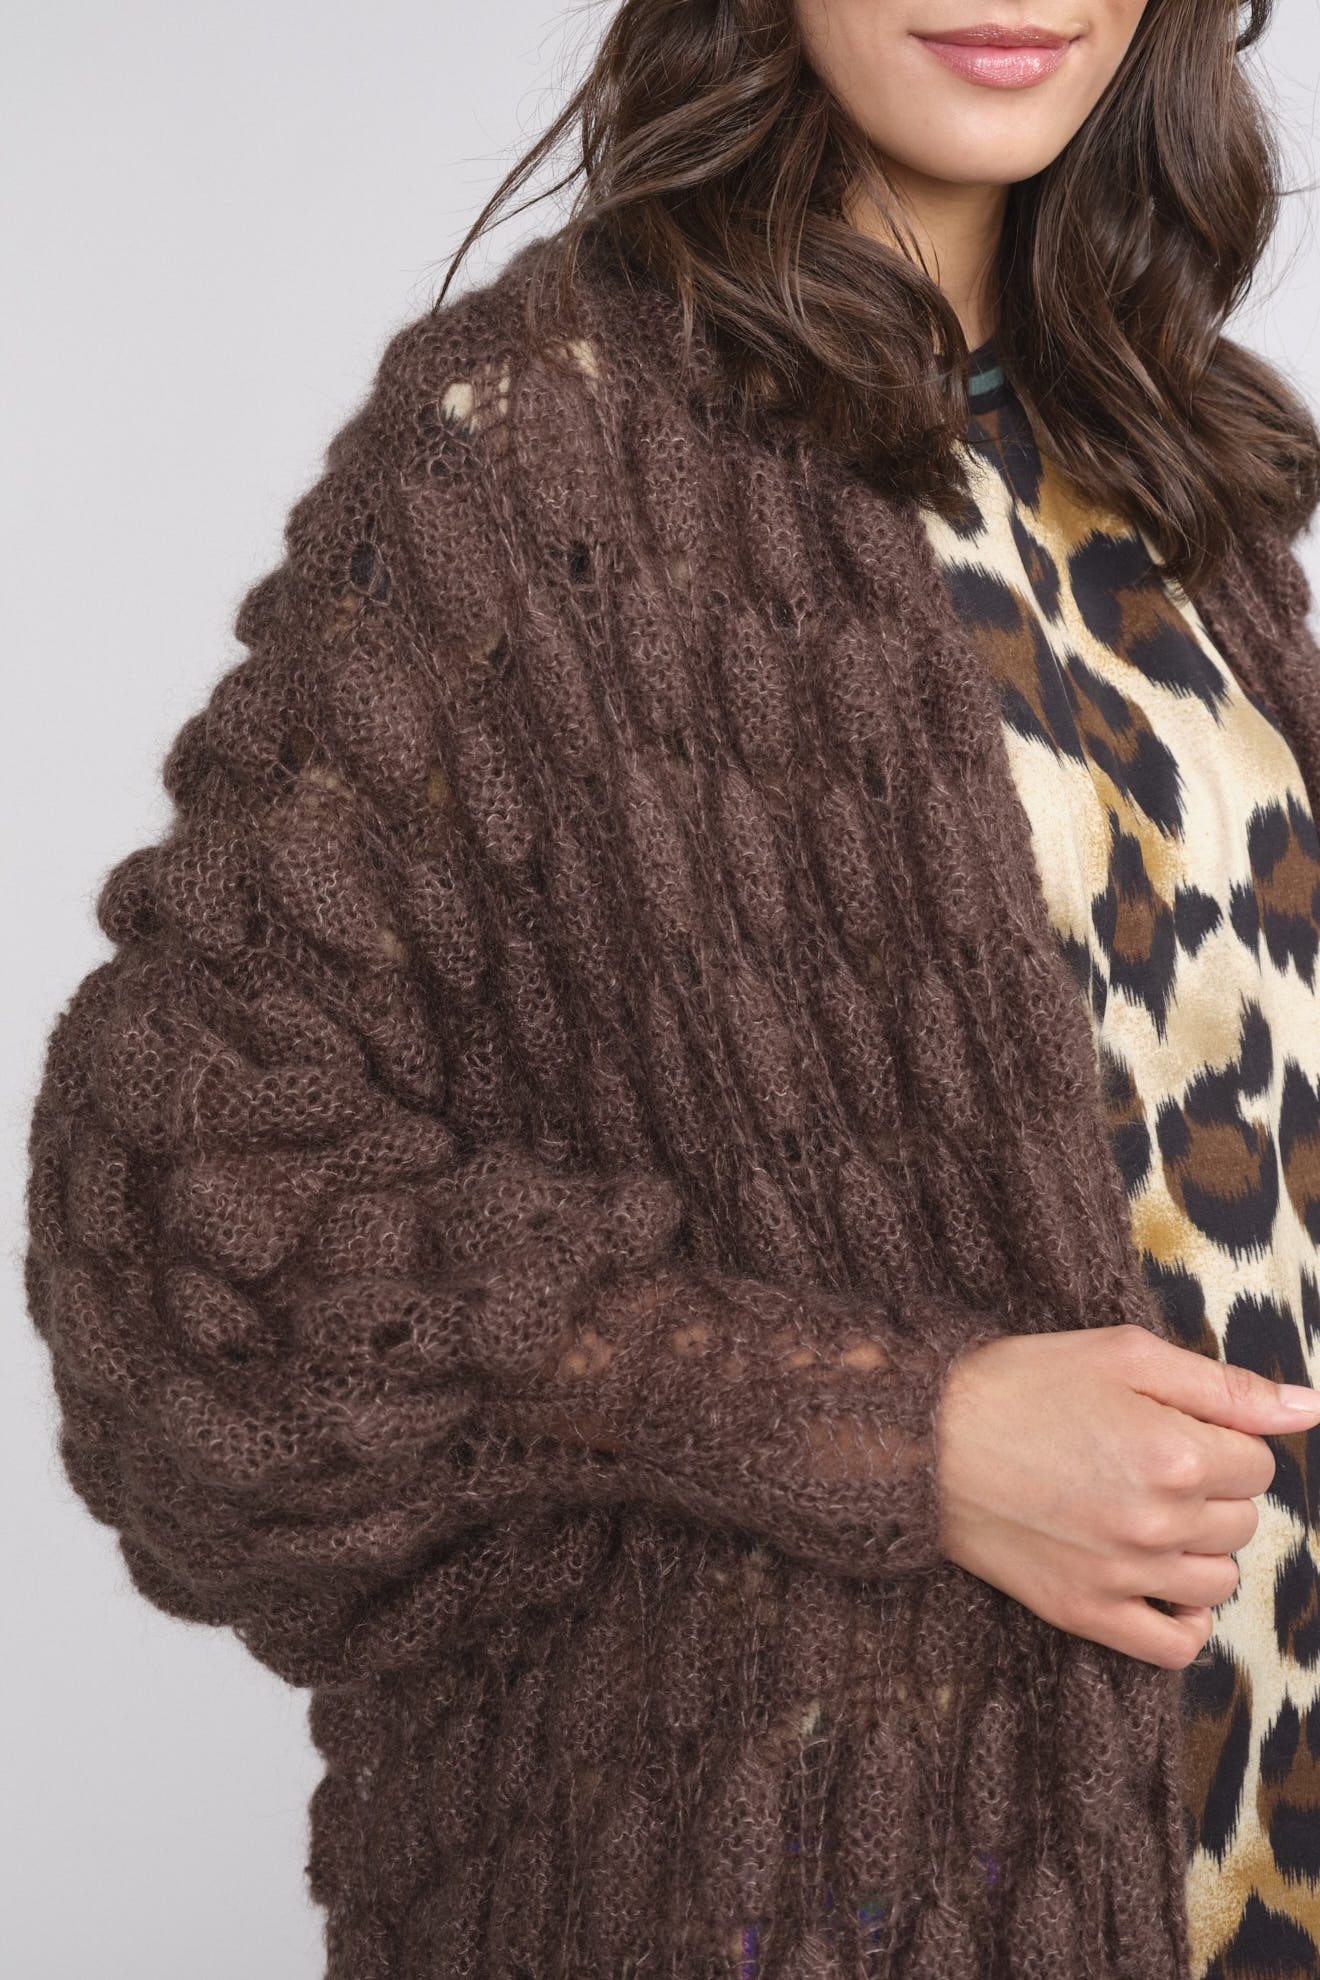 Letanne Emma Aline Lace Coat – Strickjacke aus Angorawolle und Seide braun